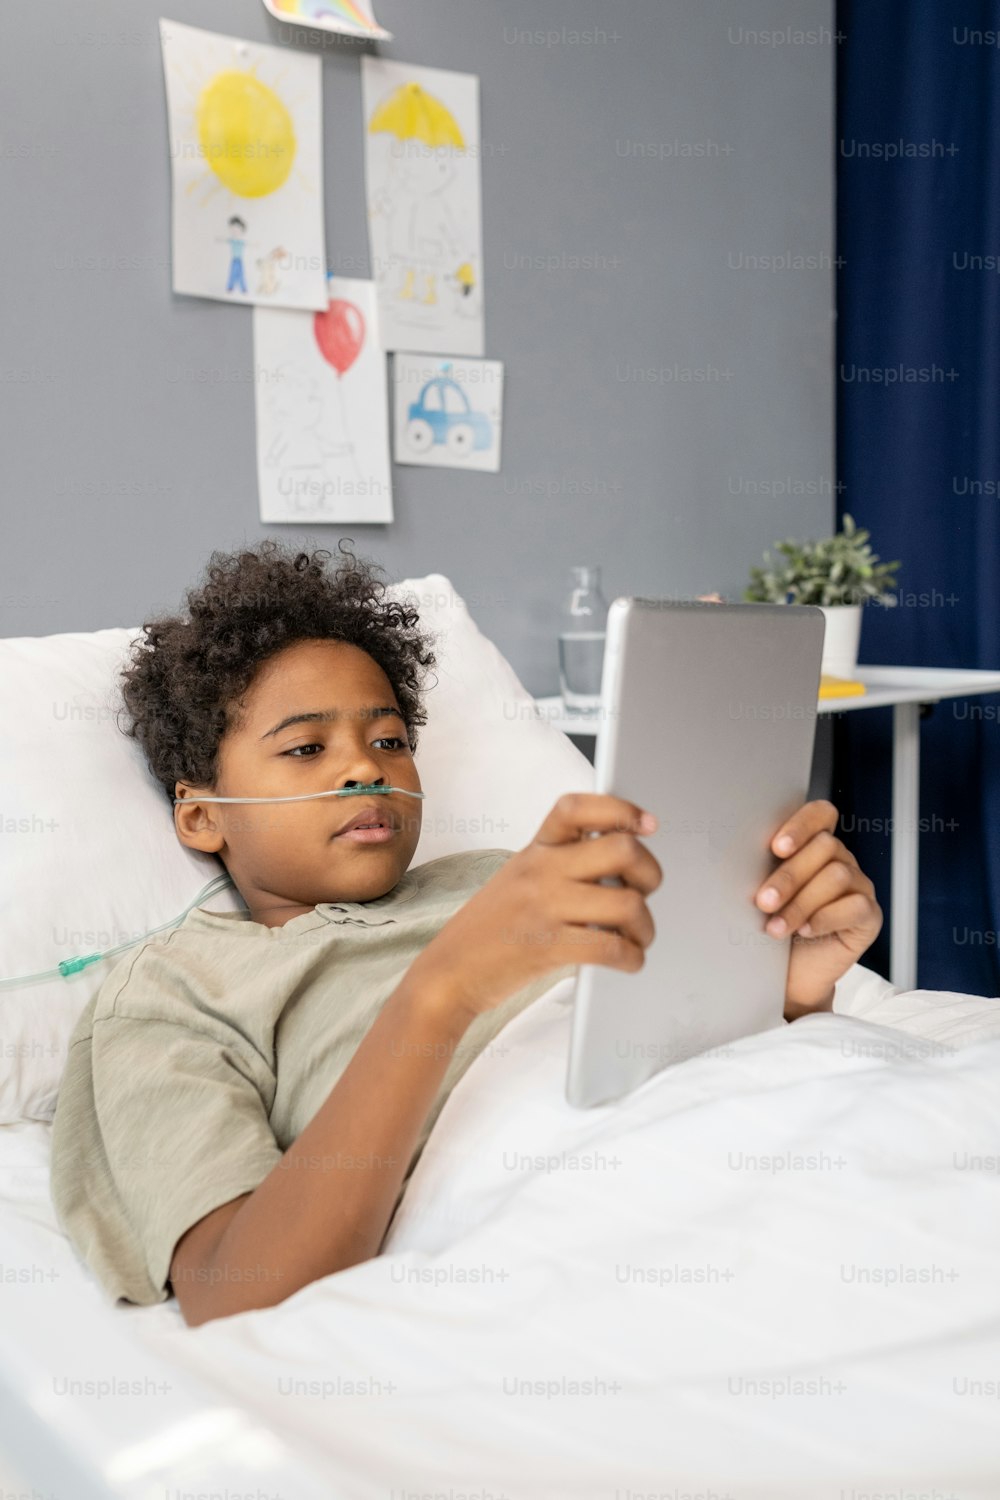 Garotinho africano assistindo algo no tablet digital enquanto deitado na cama na enfermaria do hospital